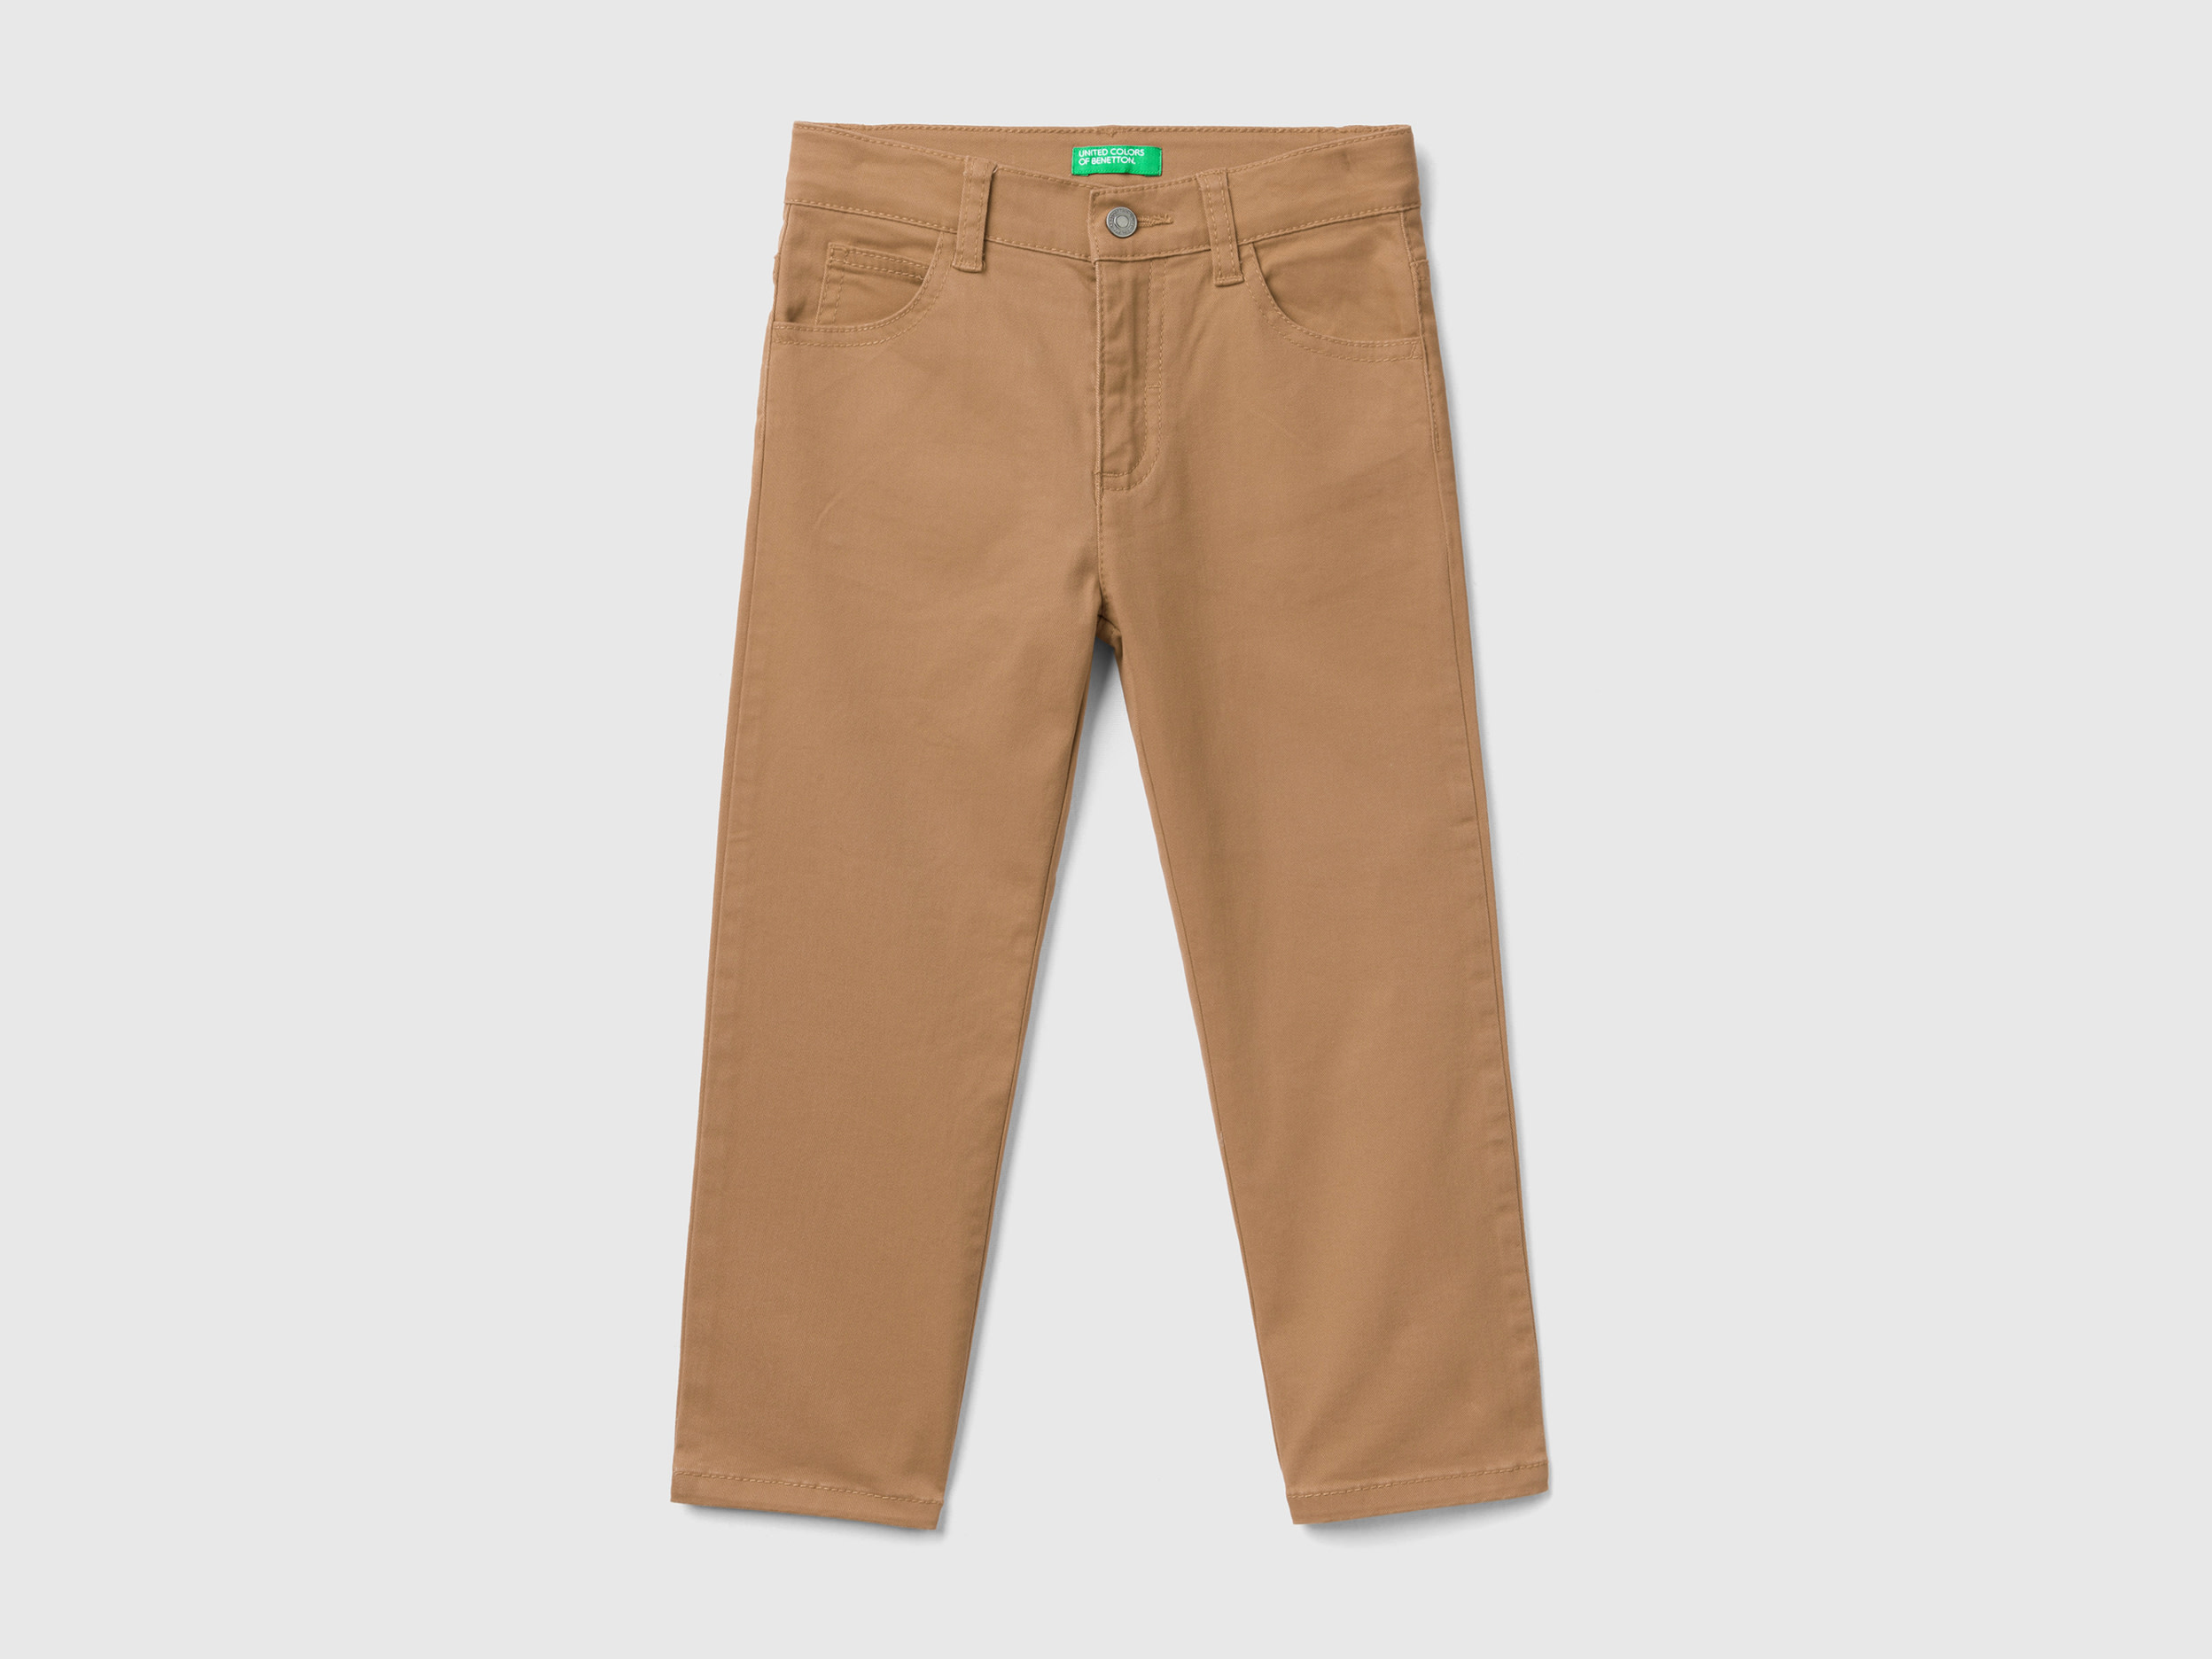 Benetton, Five-pocket Stretch Trousers, size 18-24, Beige, Kids